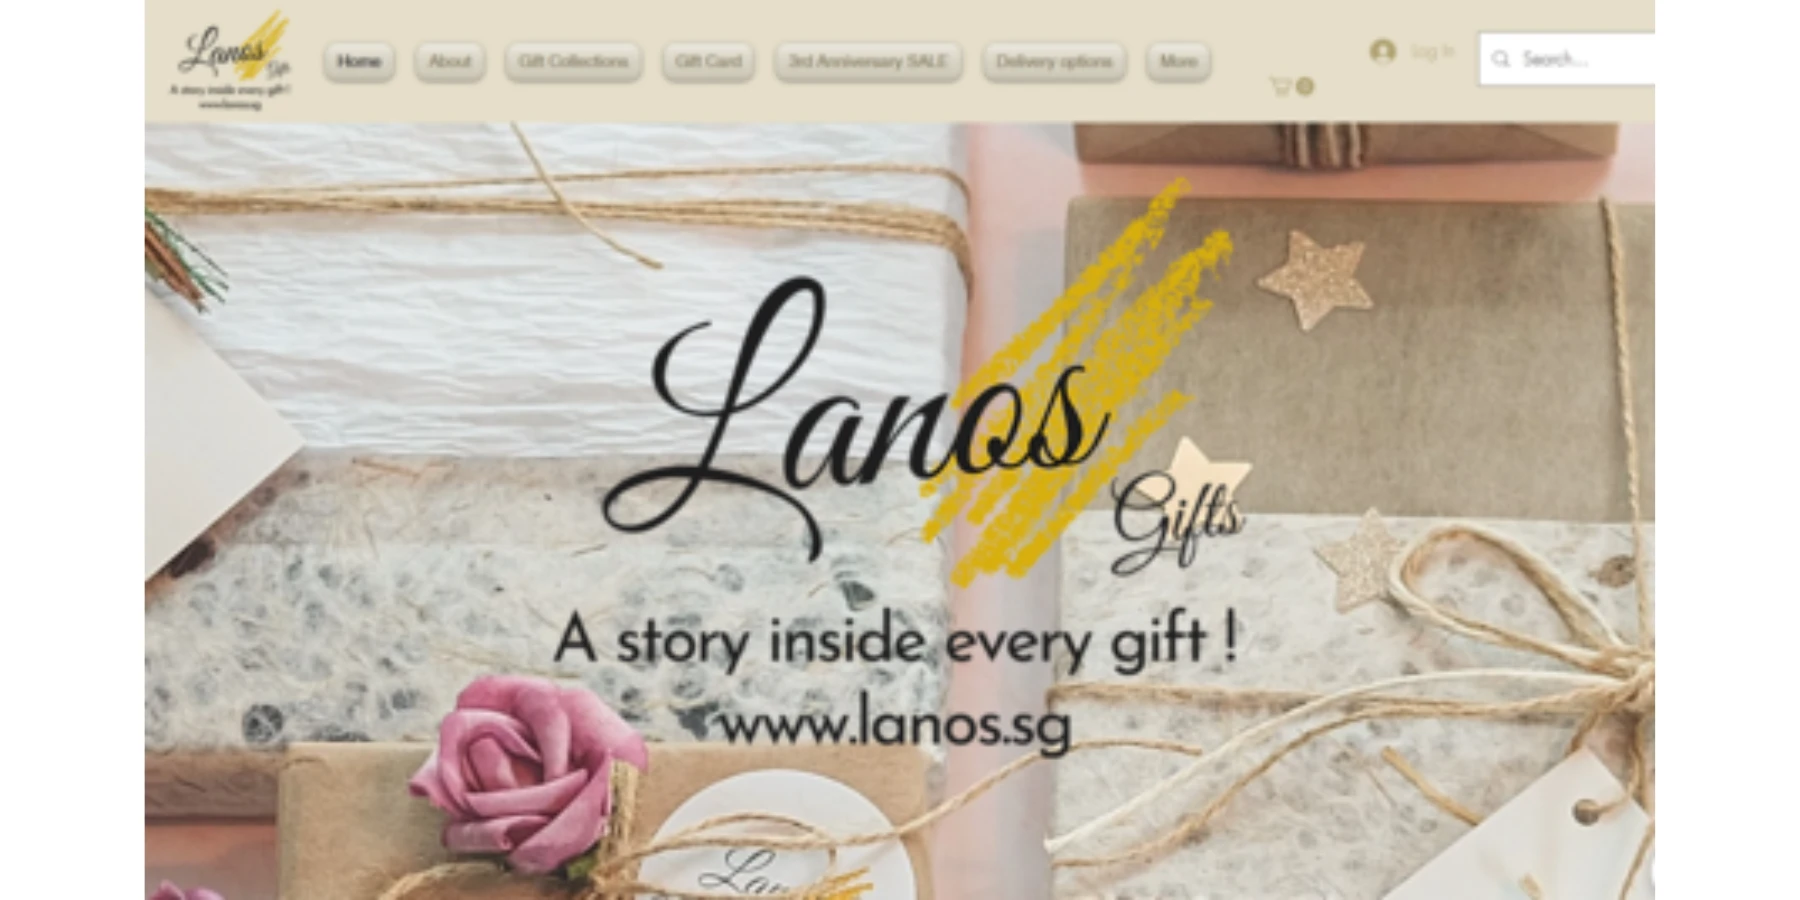 Gift shop Singapore - Lanos